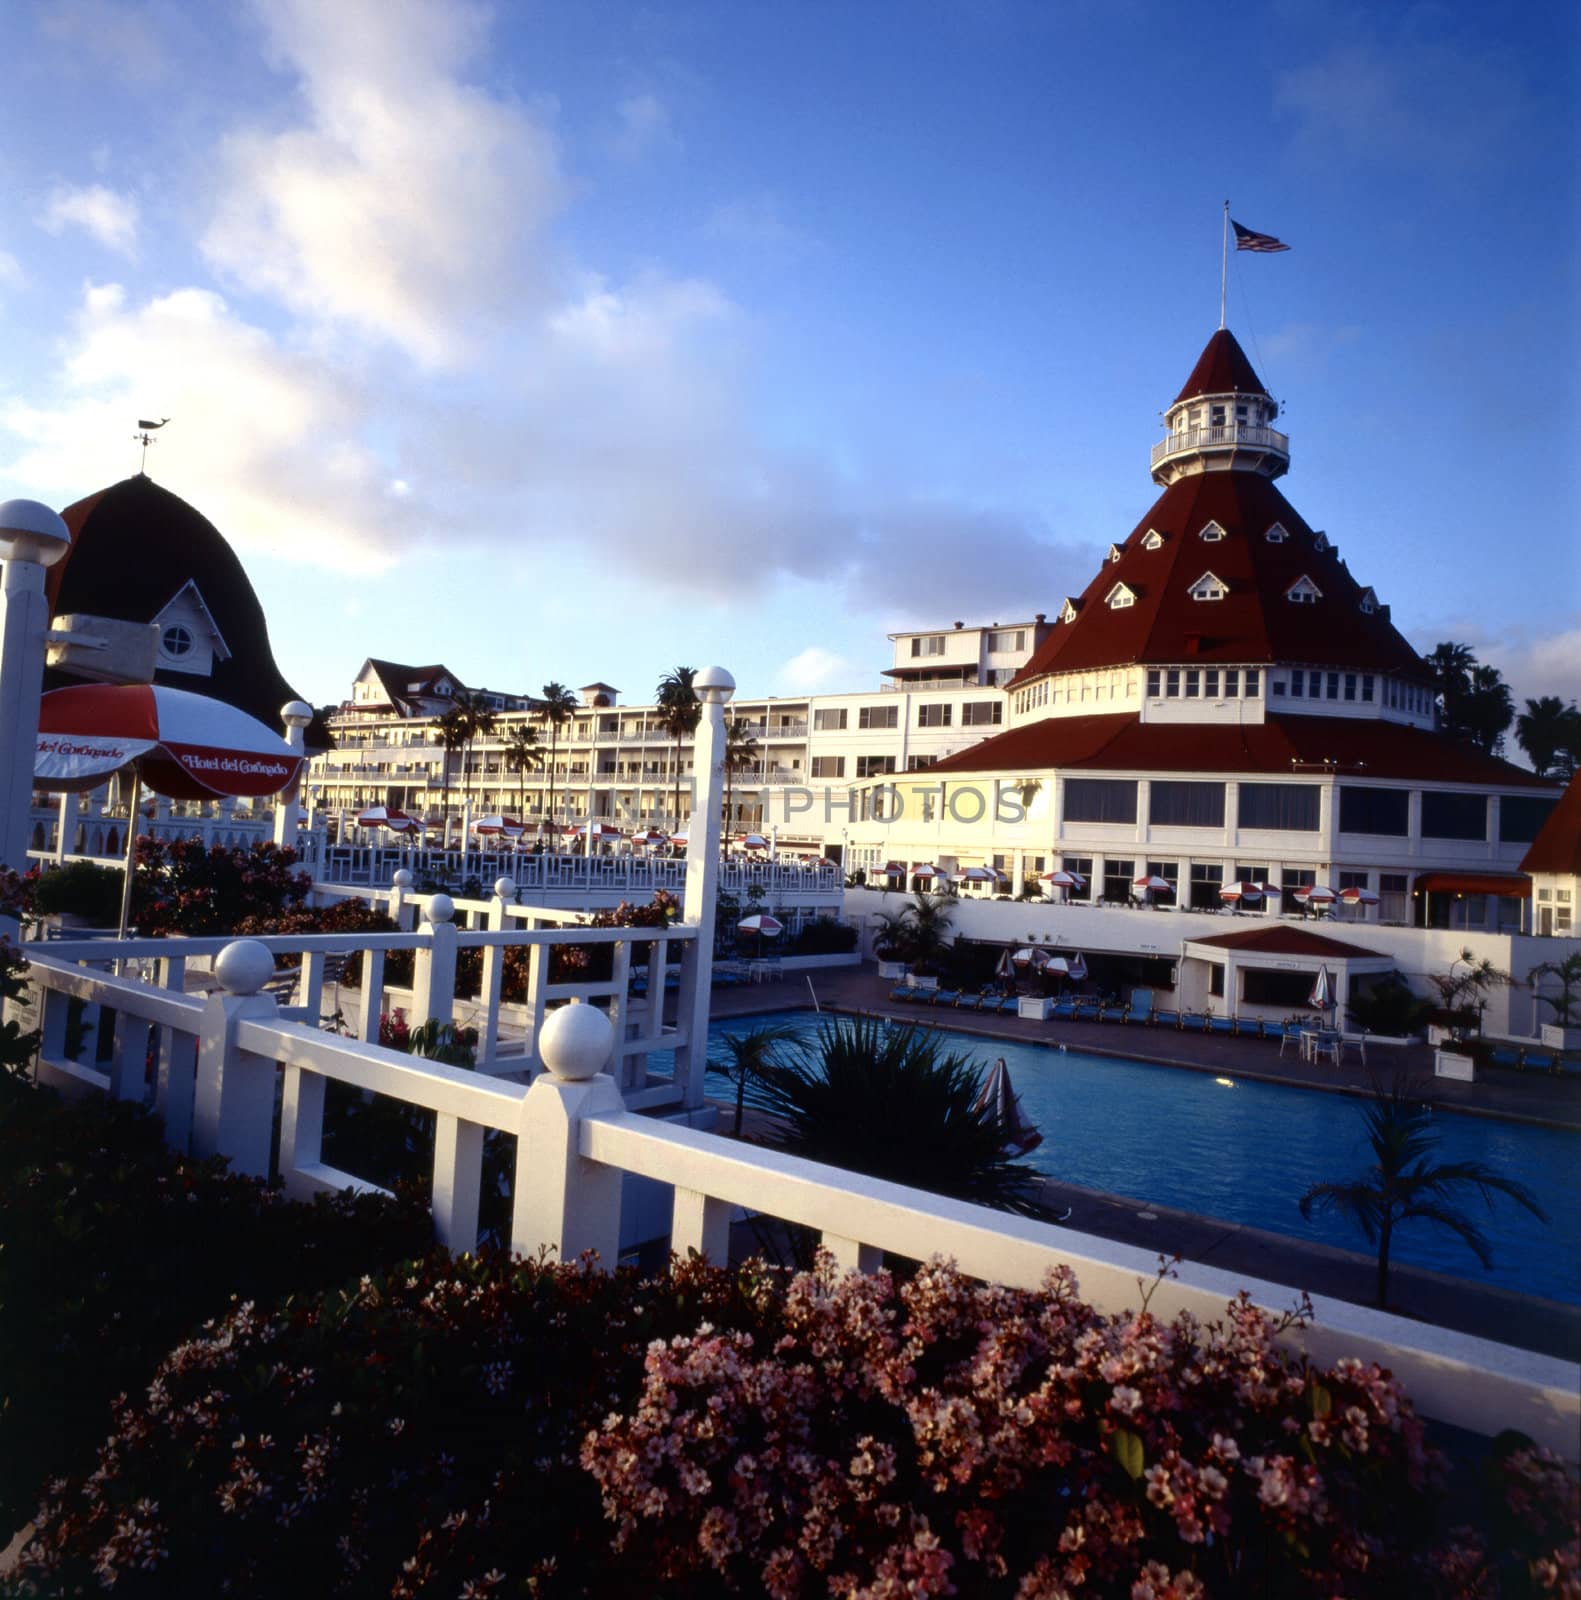 Hotel del Coronado in San Diego